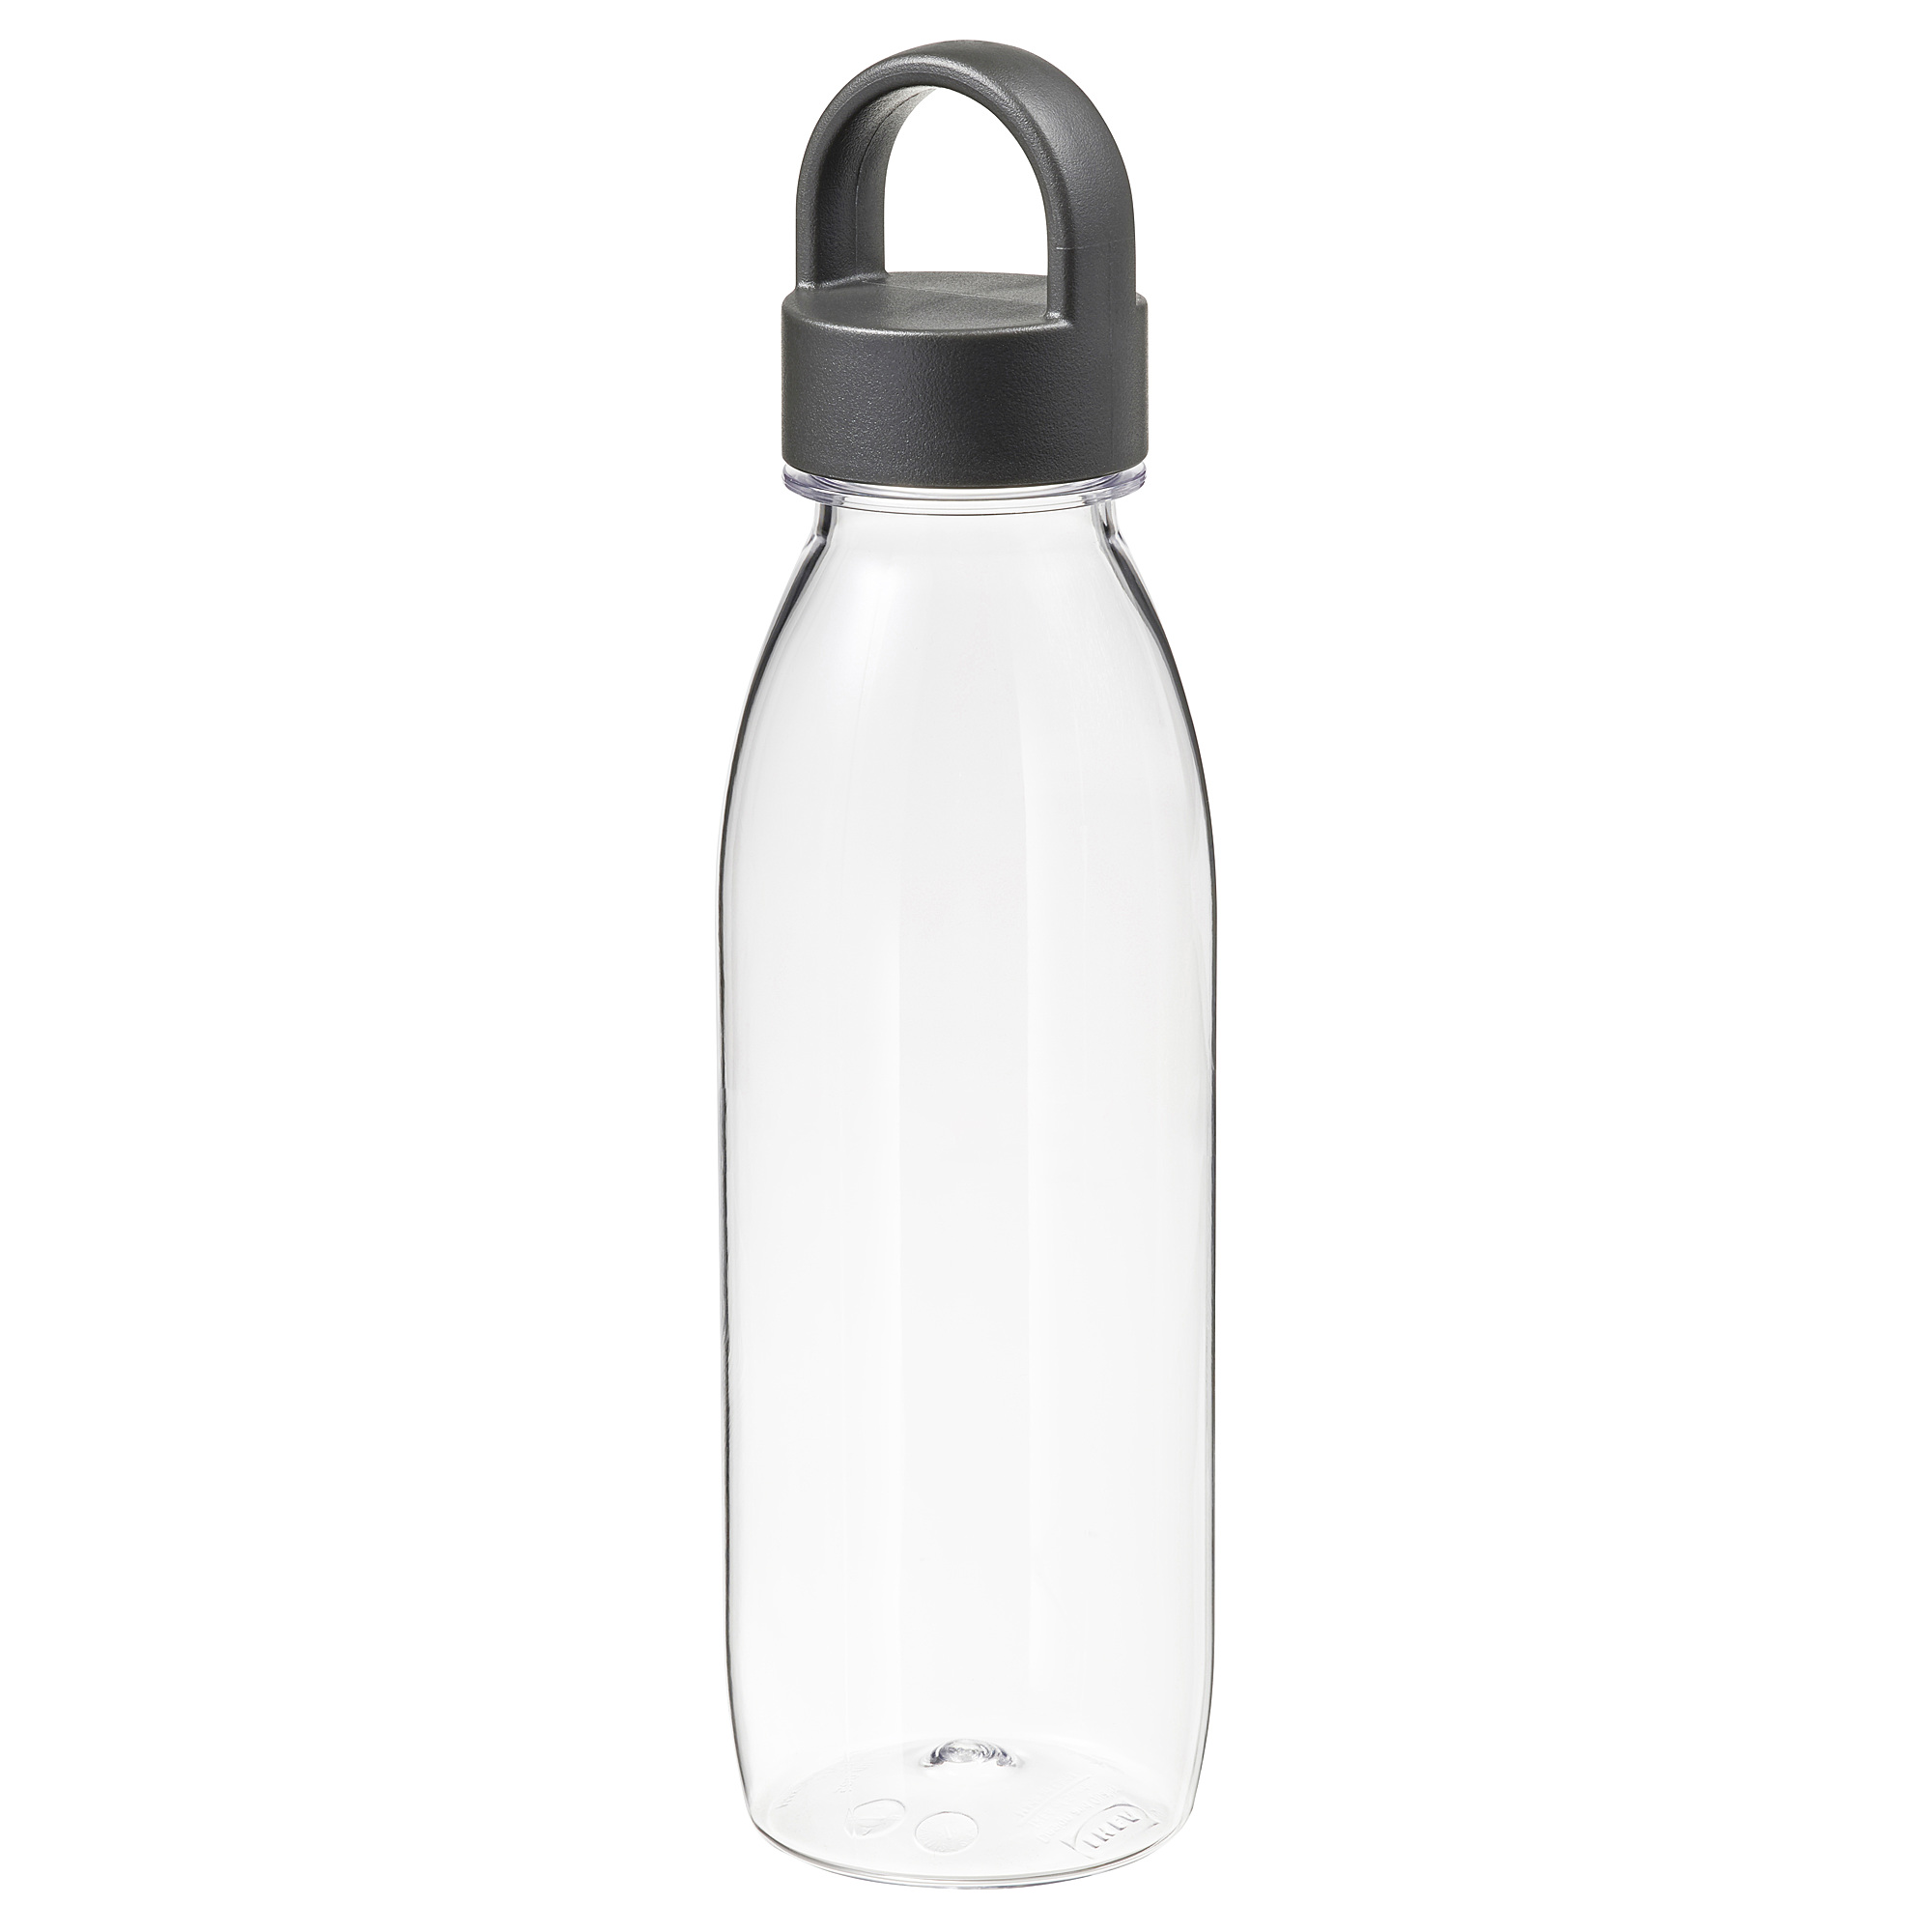 IKEA 365+ water bottle